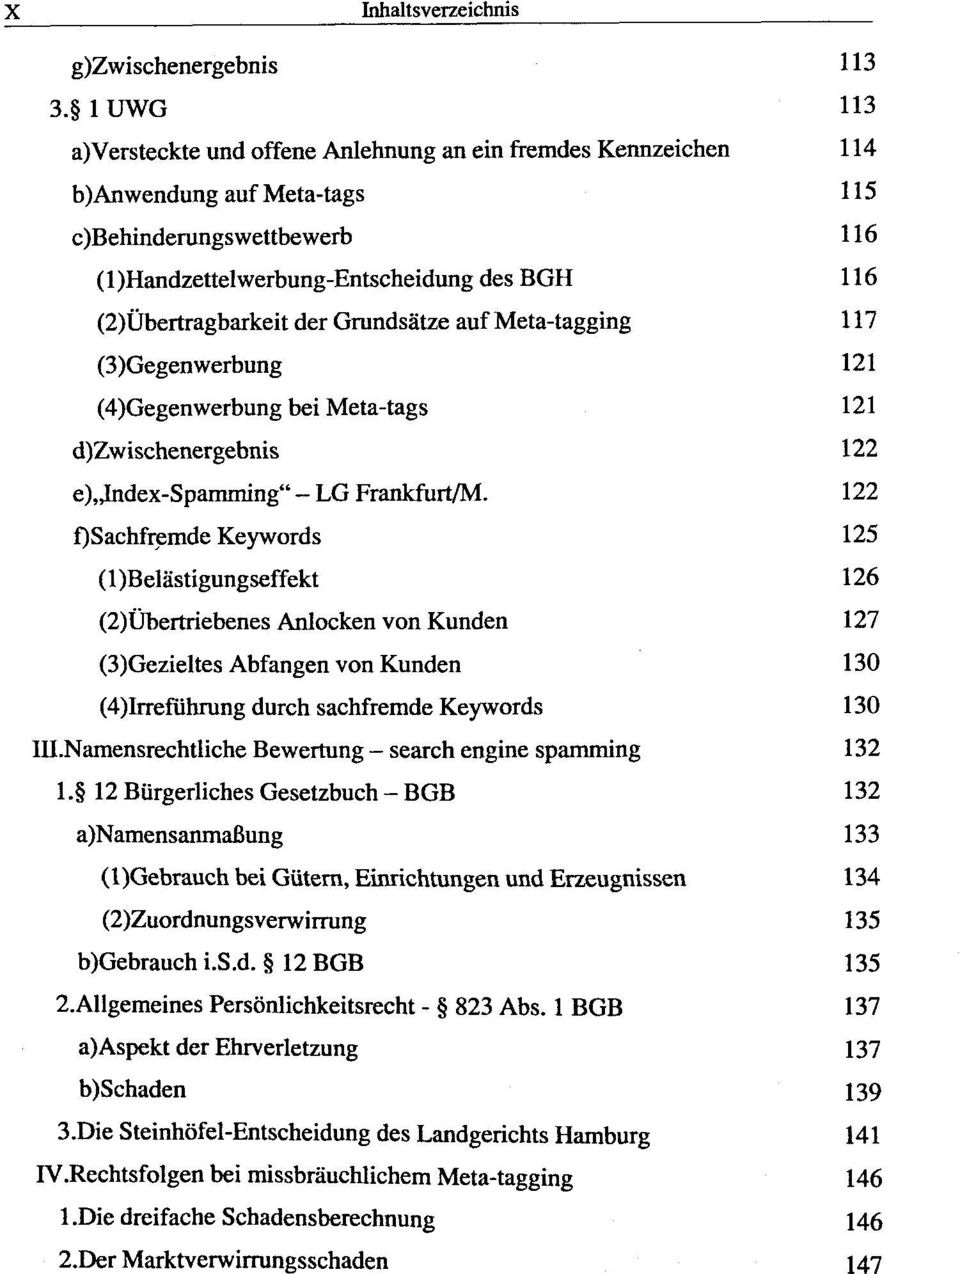 (2)Ûbertragbarkeit der Grundsâtze auf Meta-tagging 117 (3)Gegenwerbung 121 (4)Gegenwerbung bei Meta-tags 121 d)zwischenergebnis 122 e),,index-spamming" - LG Frankfurt/M.